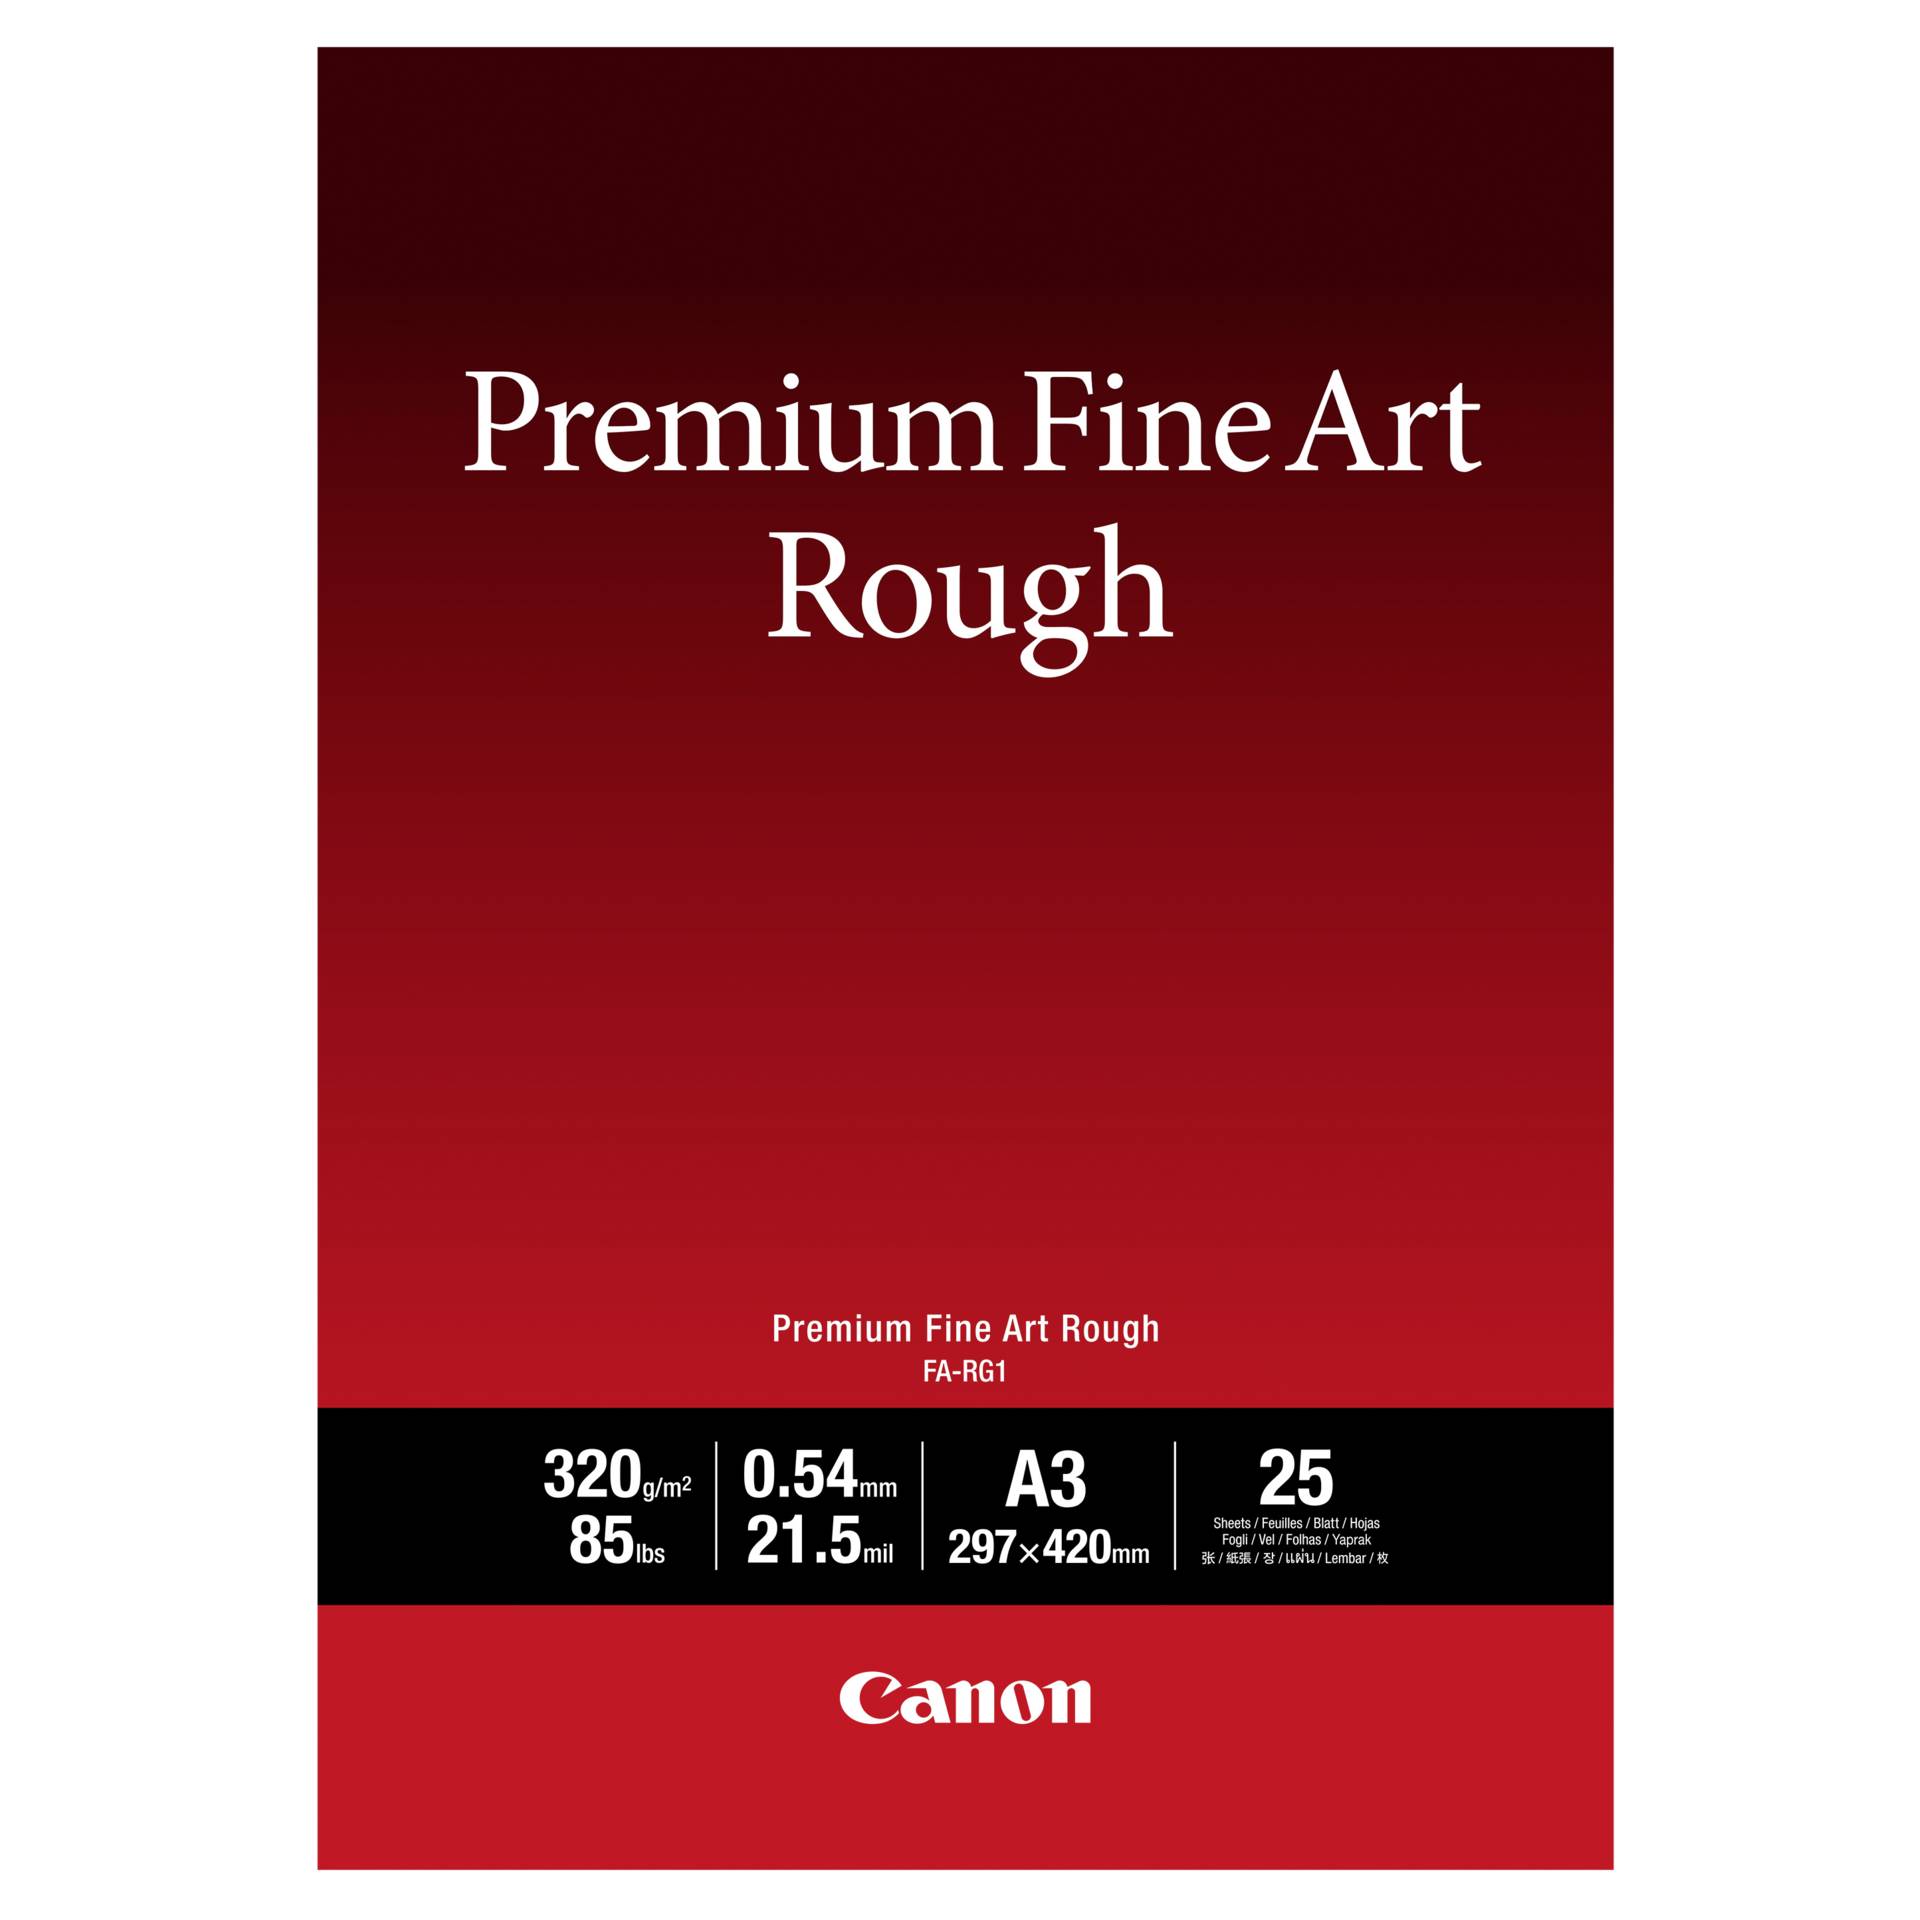 Canon FA-RG 1 Premium Fine Art Rough A 3, 25 fogli 320 g